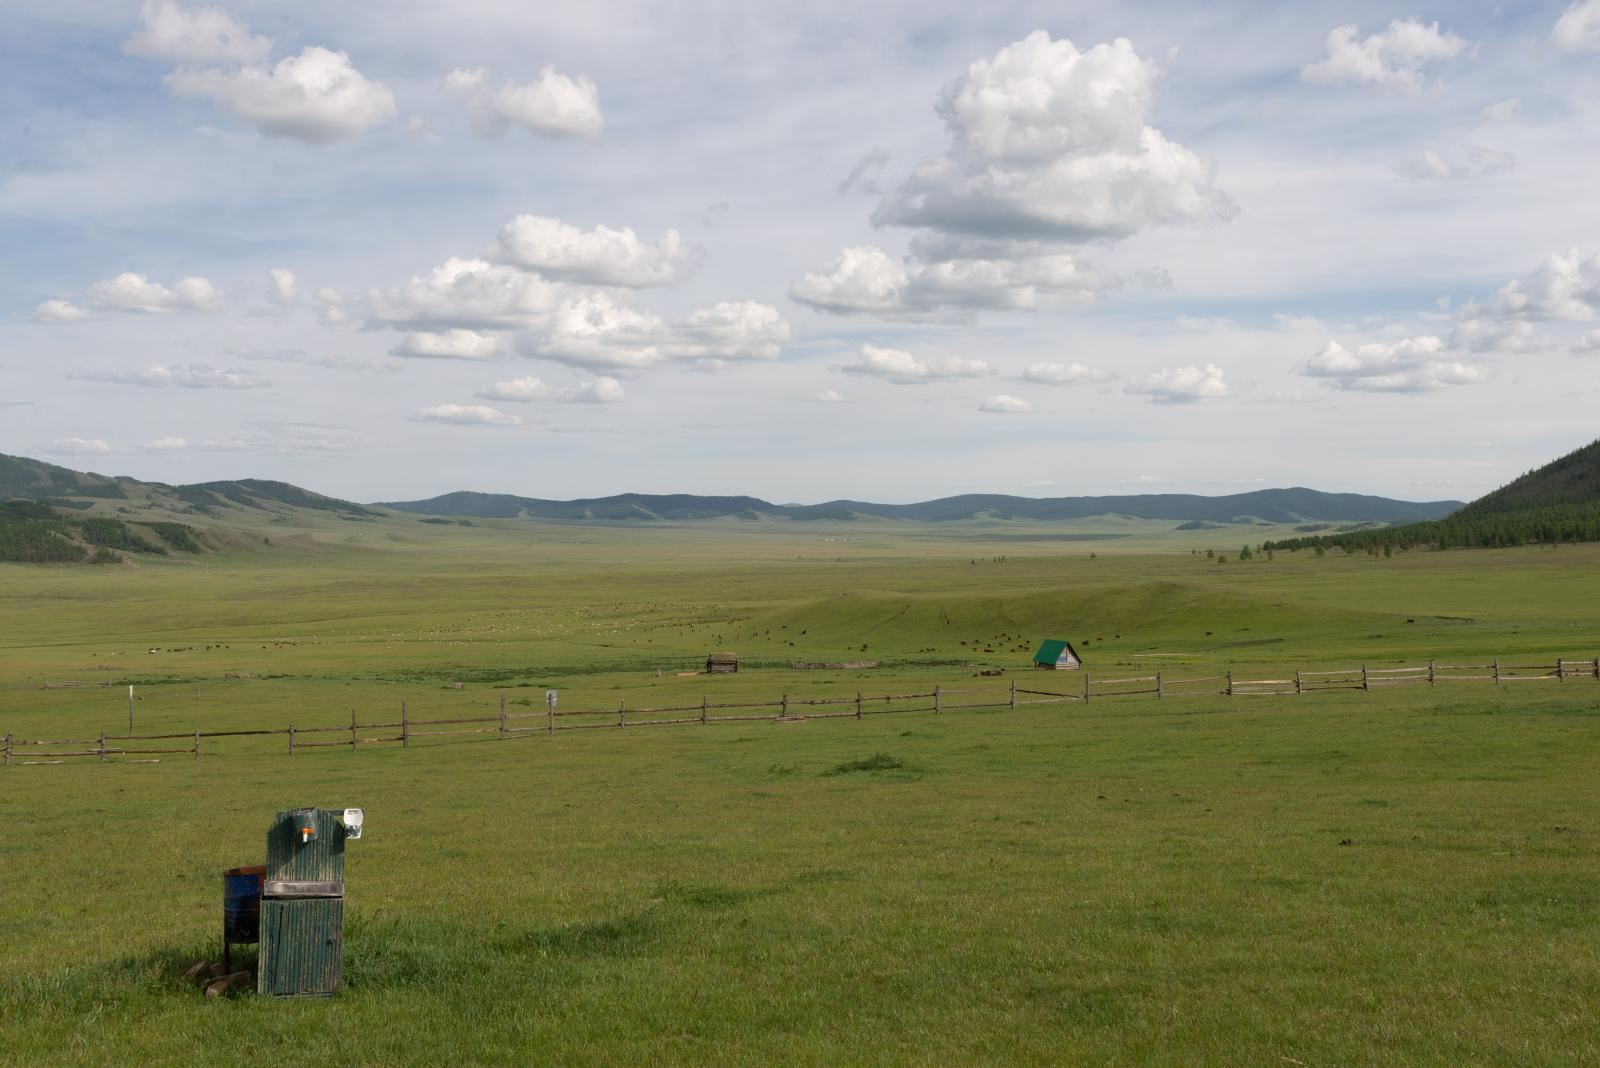 Mongolie / Mongolia 2019 - 